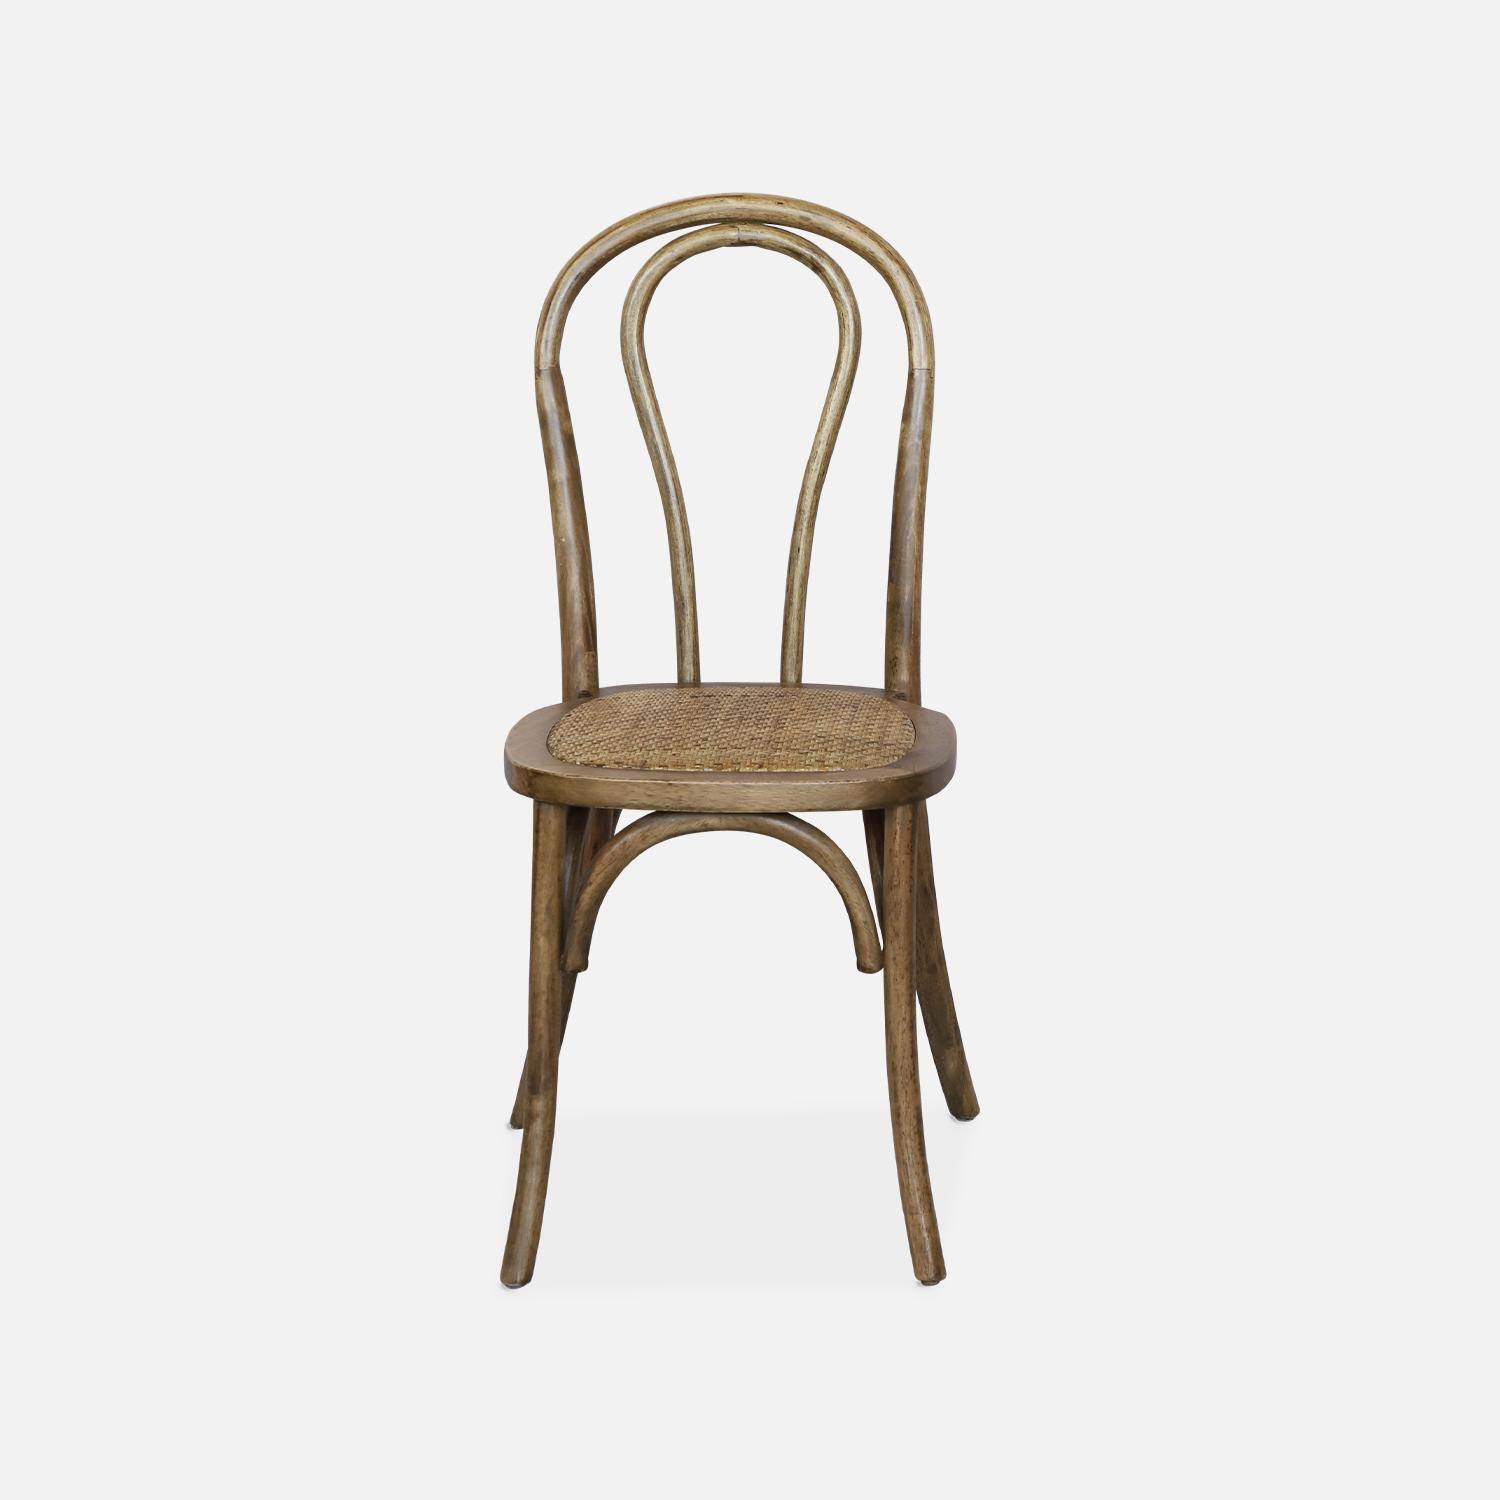 Juego de dos sillas vintage de madera con asiento de ratán y respaldo redondeado en marrón antiguo Photo2